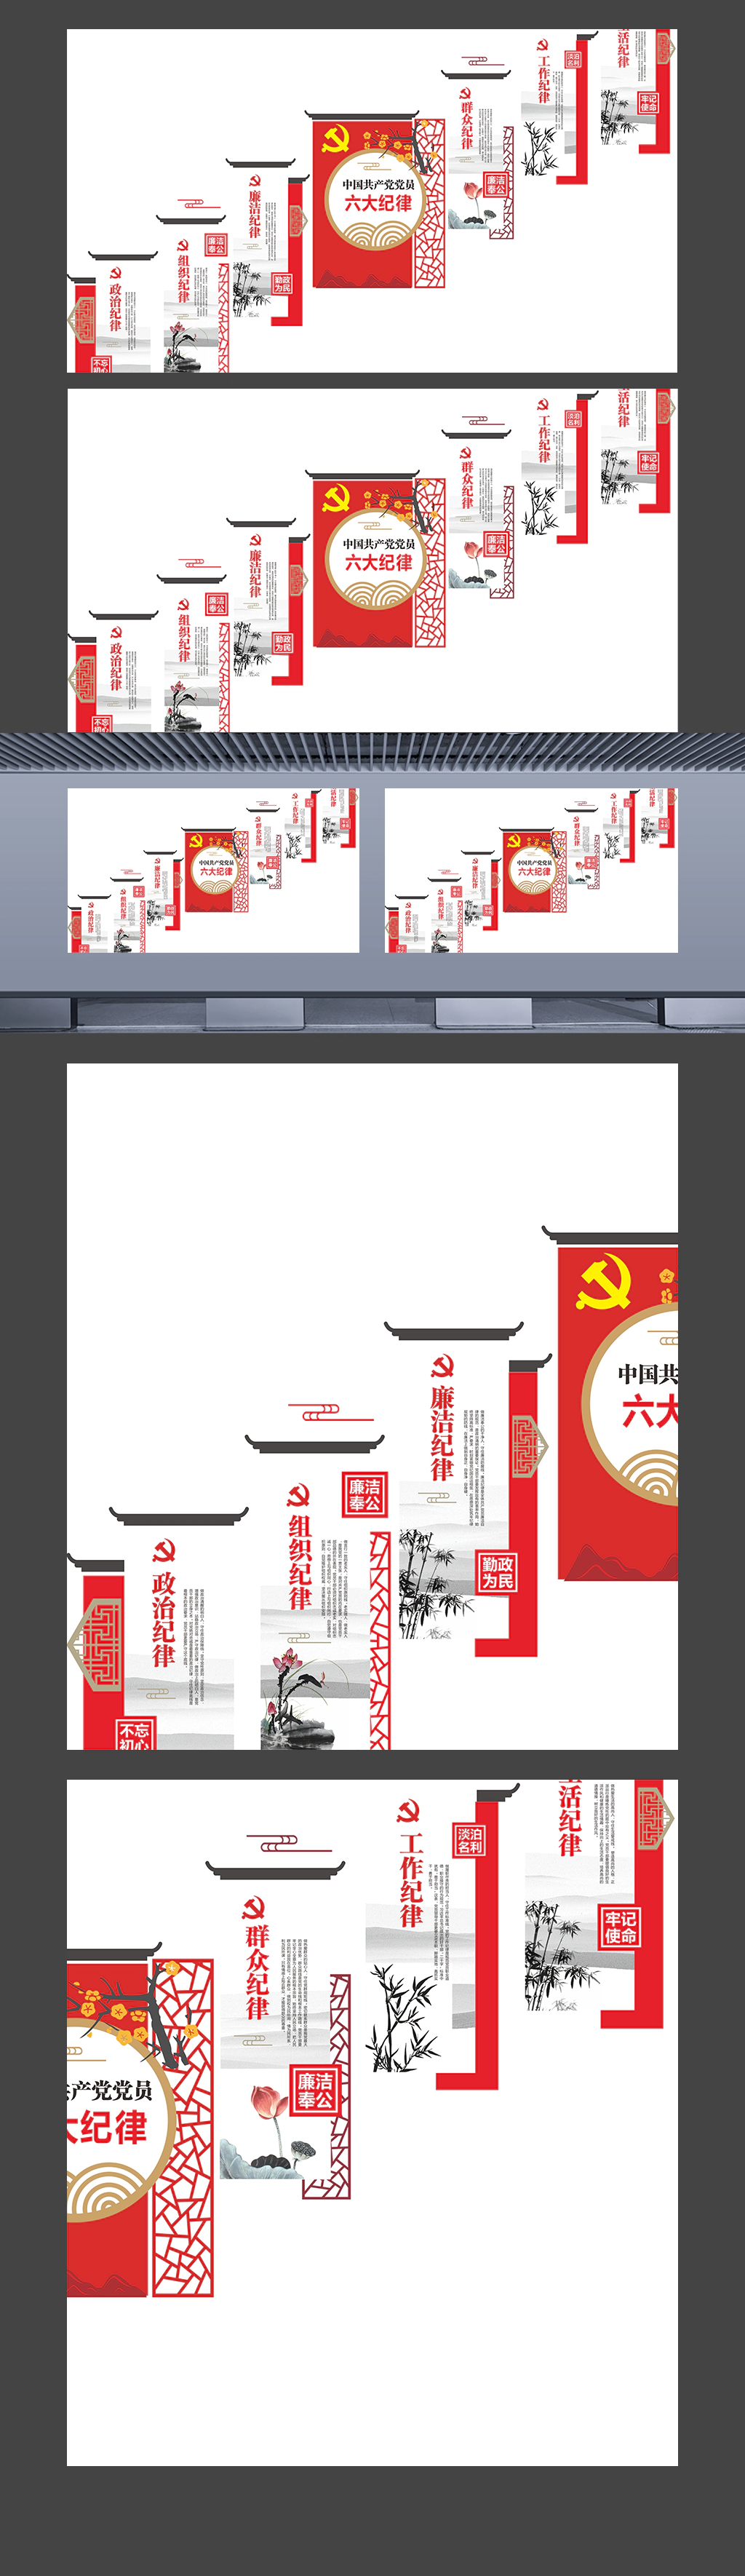 徽派建筑背景中国共产党员六大纪律系列廉政文化墙楼梯墙